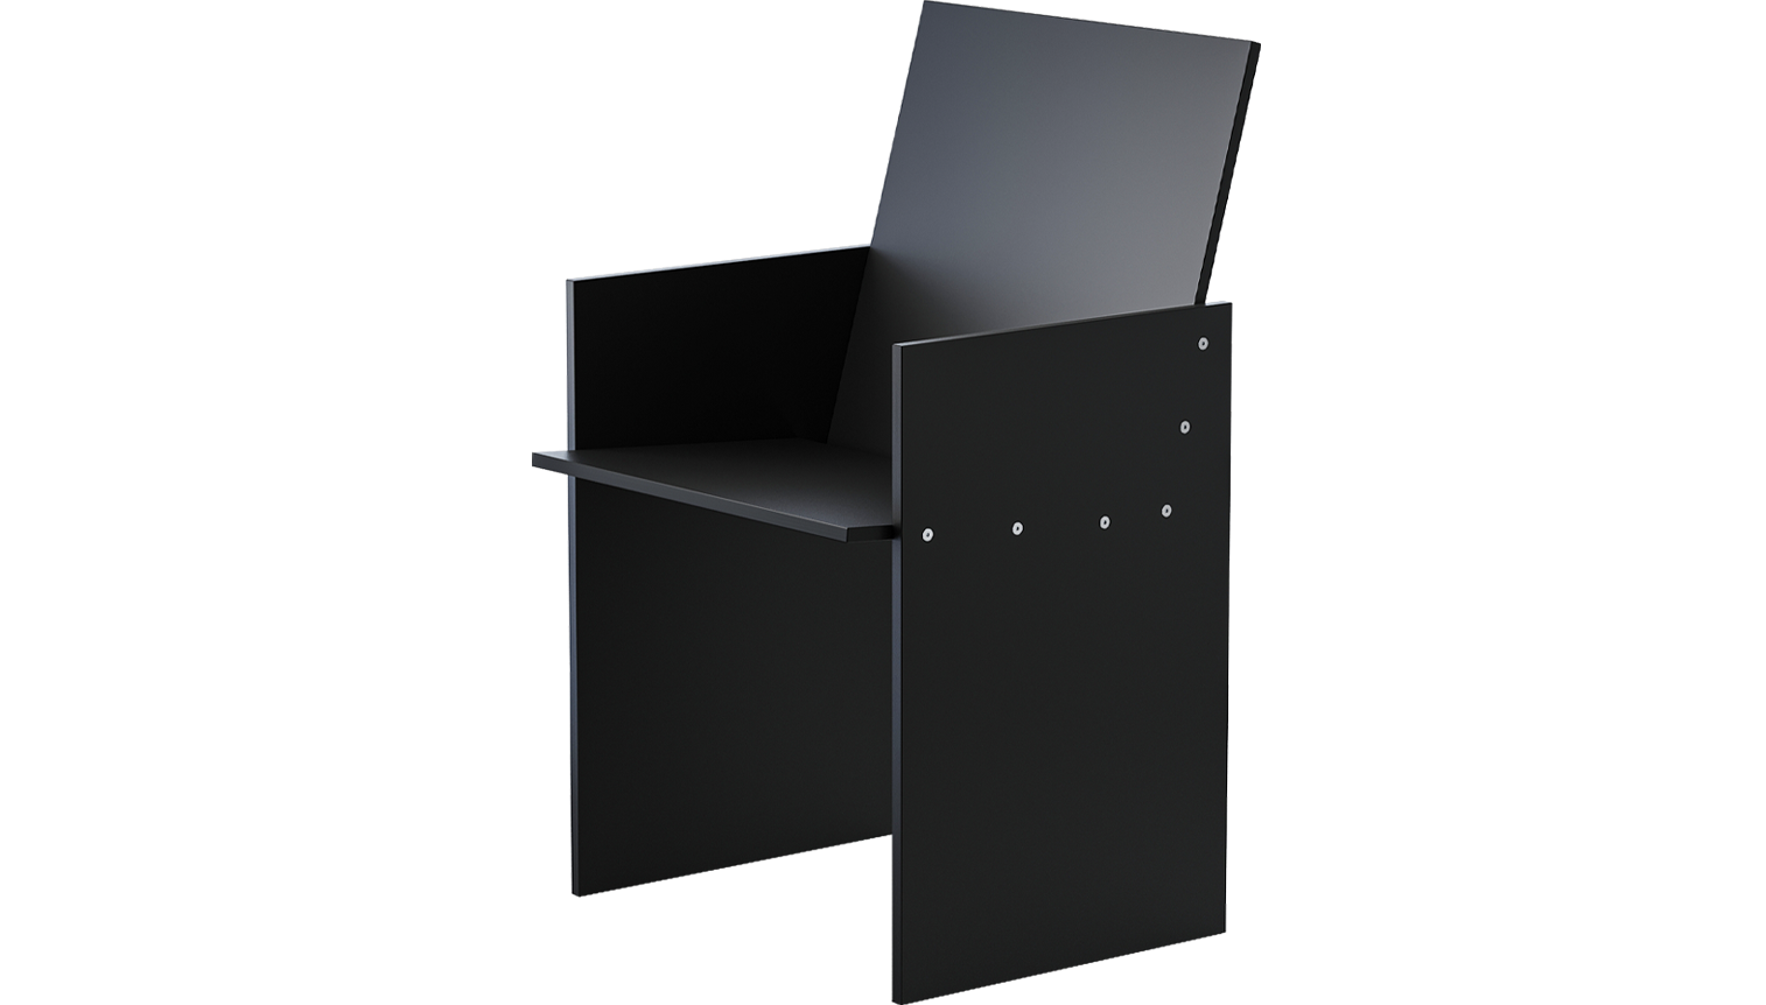 PS12 edge chair